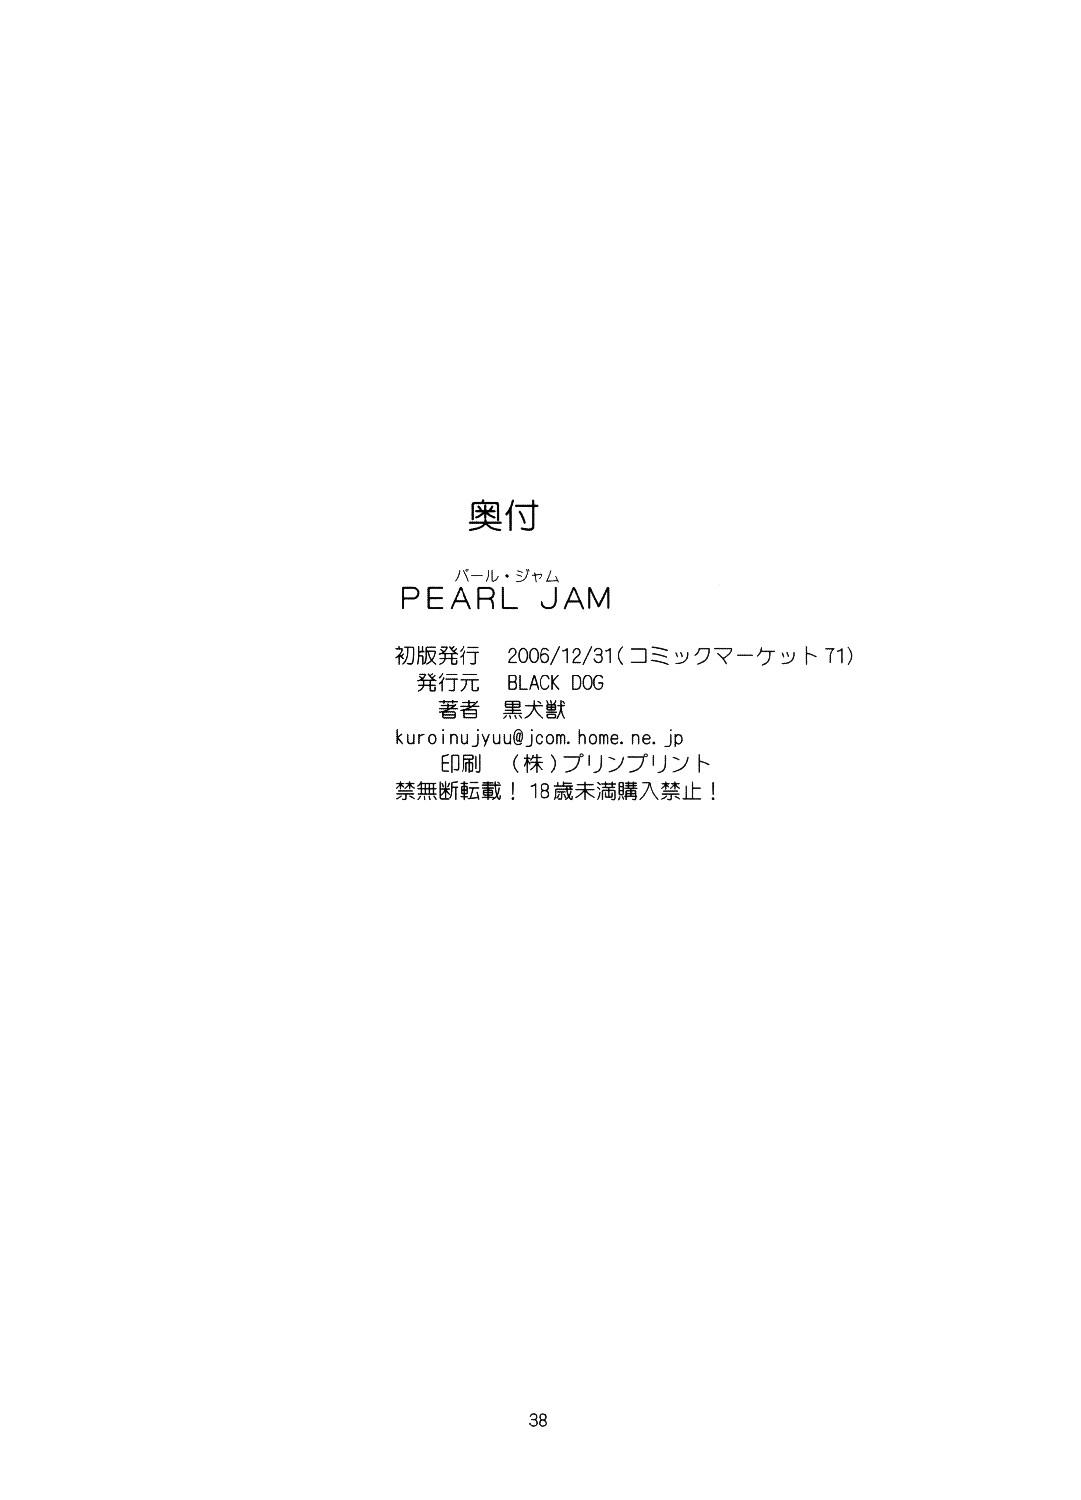 Pearl Jam 36